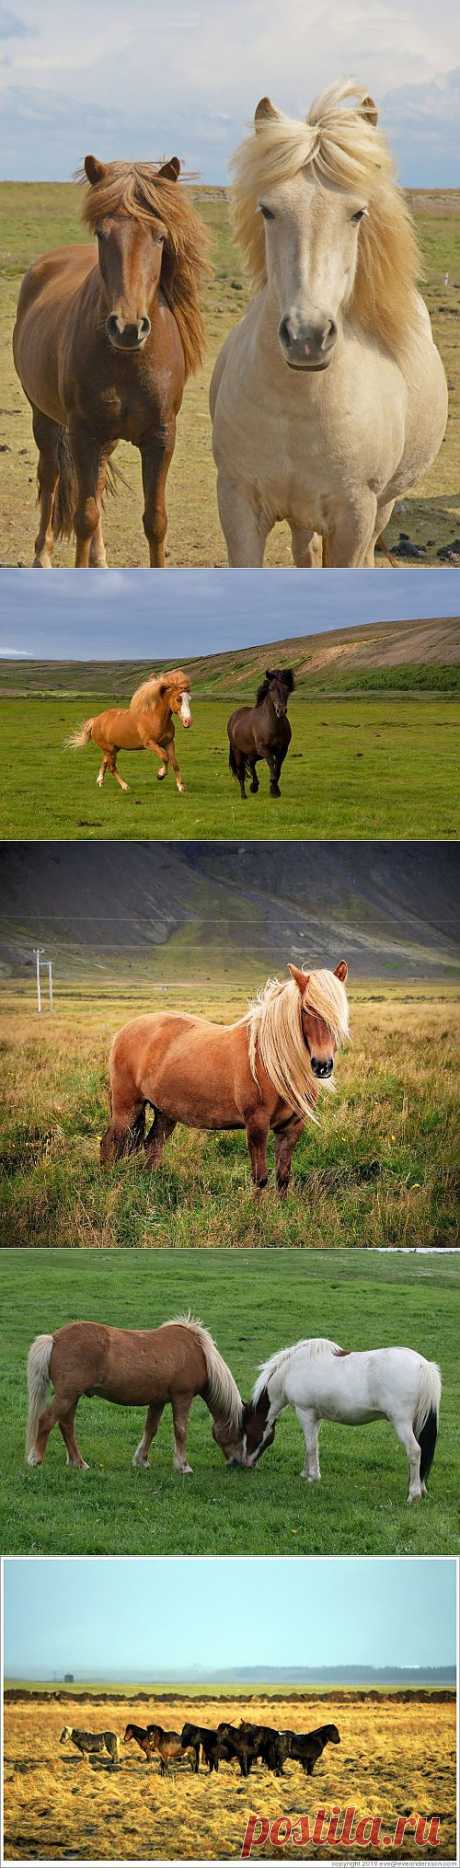 Лошади Исландии (102 фото) » Картины, художники, фотографы на Nevsepic